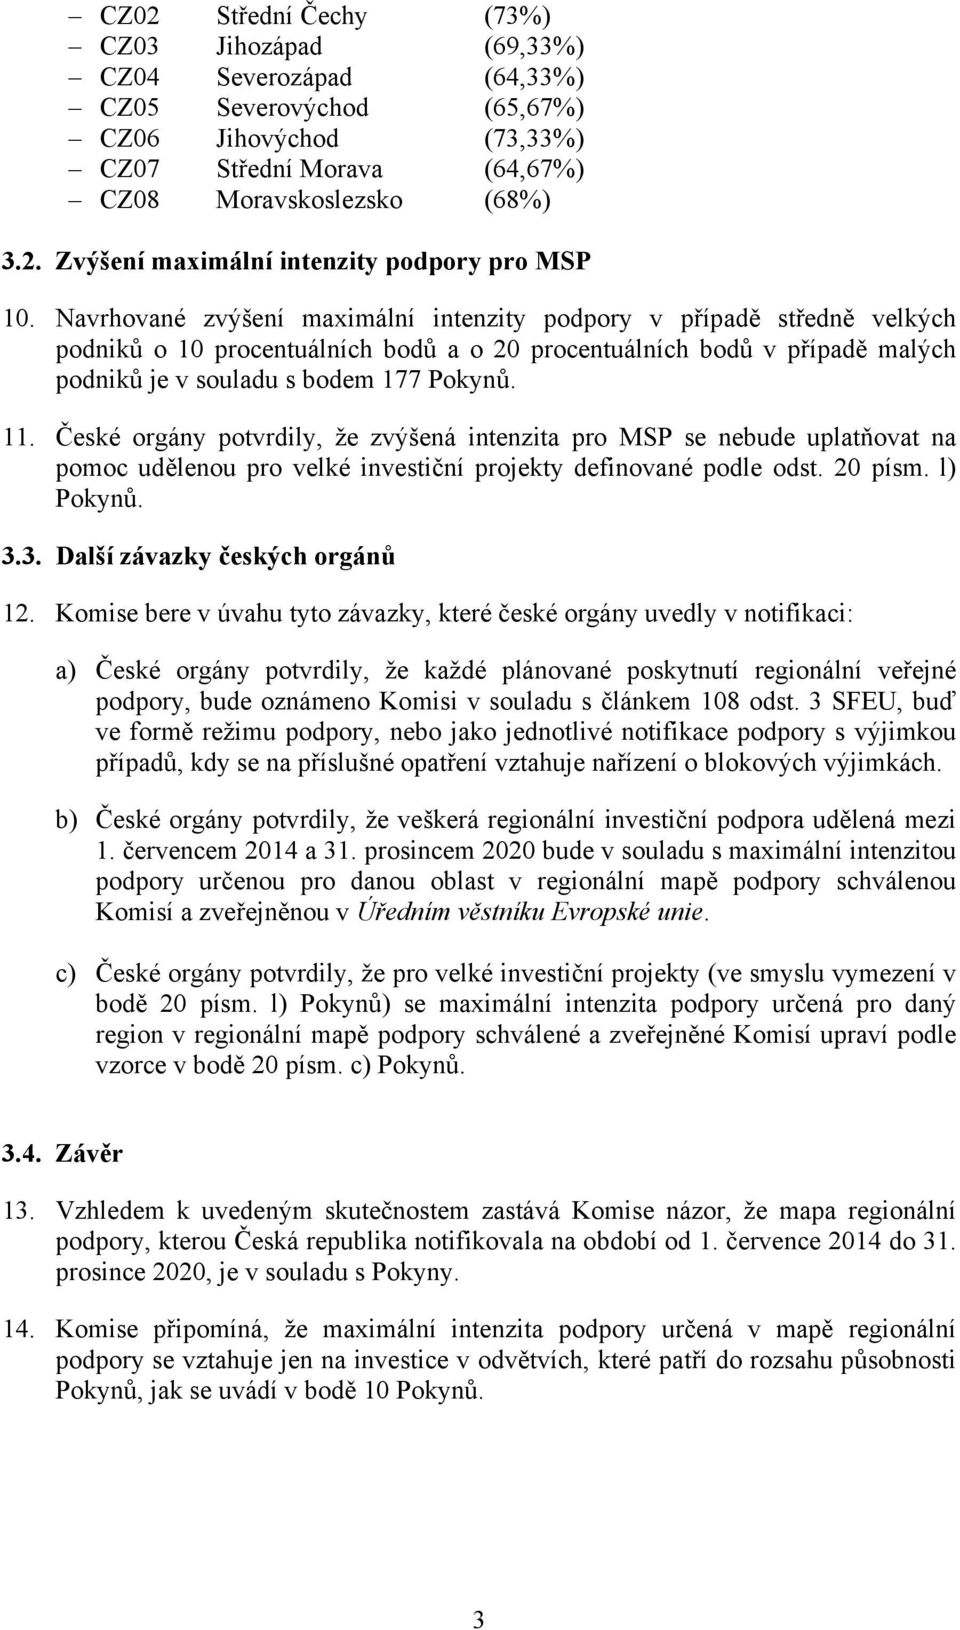 České orgány potvrdily, že zvýšená intenzita pro MSP se nebude uplatňovat na pomoc udělenou pro velké investiční projekty definované podle odst. 20 písm. l) Pokynů. 3.3. Další závazky českých orgánů 12.